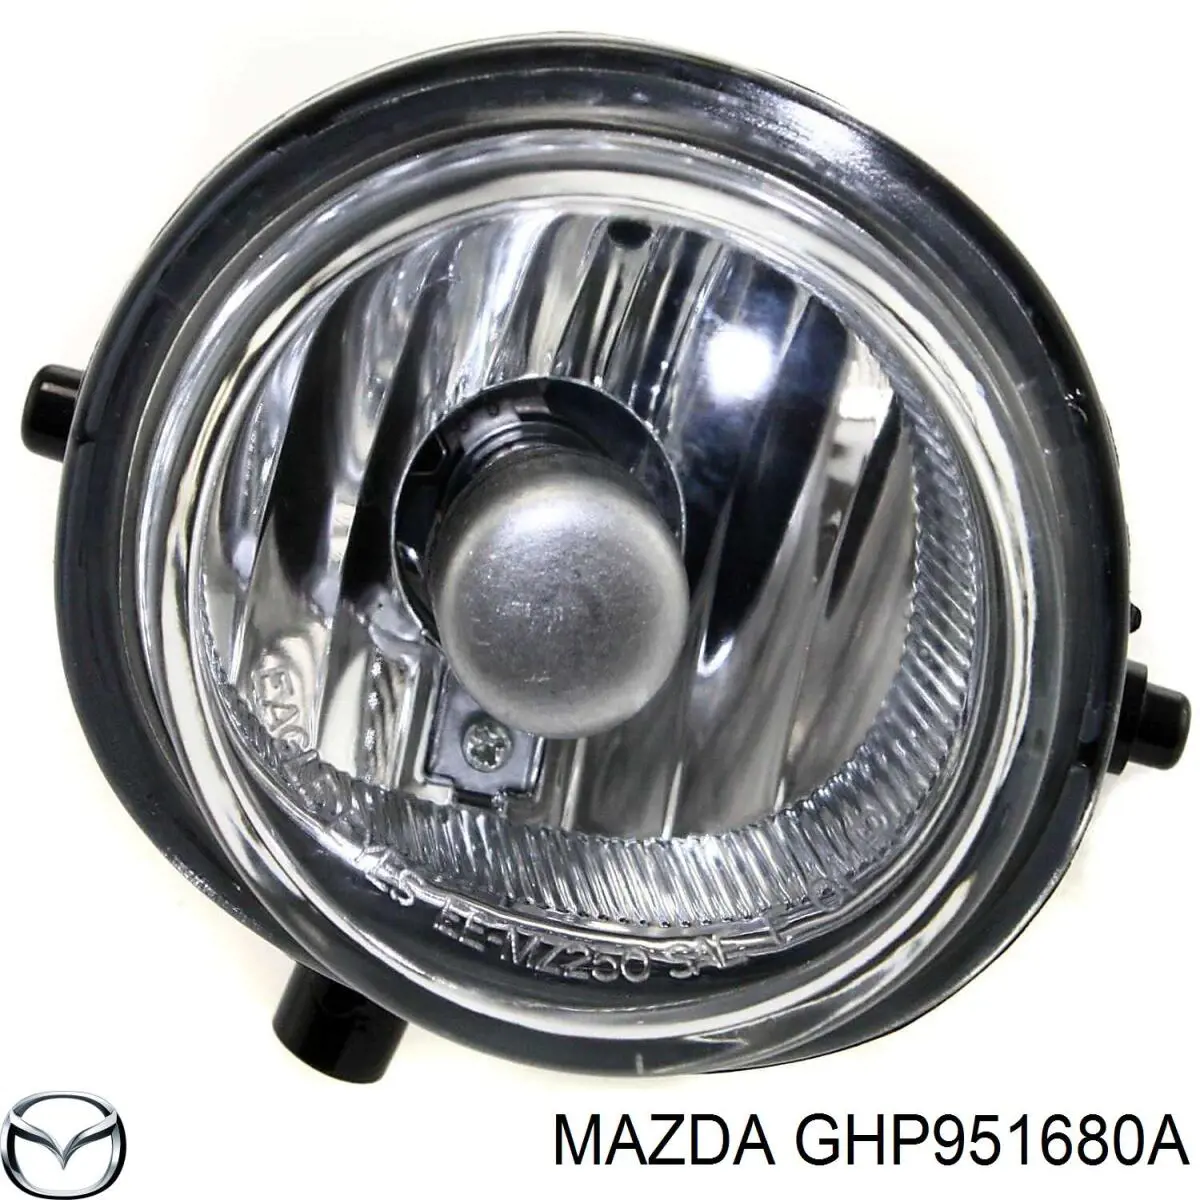 GHP951680A Mazda faro antiniebla derecho